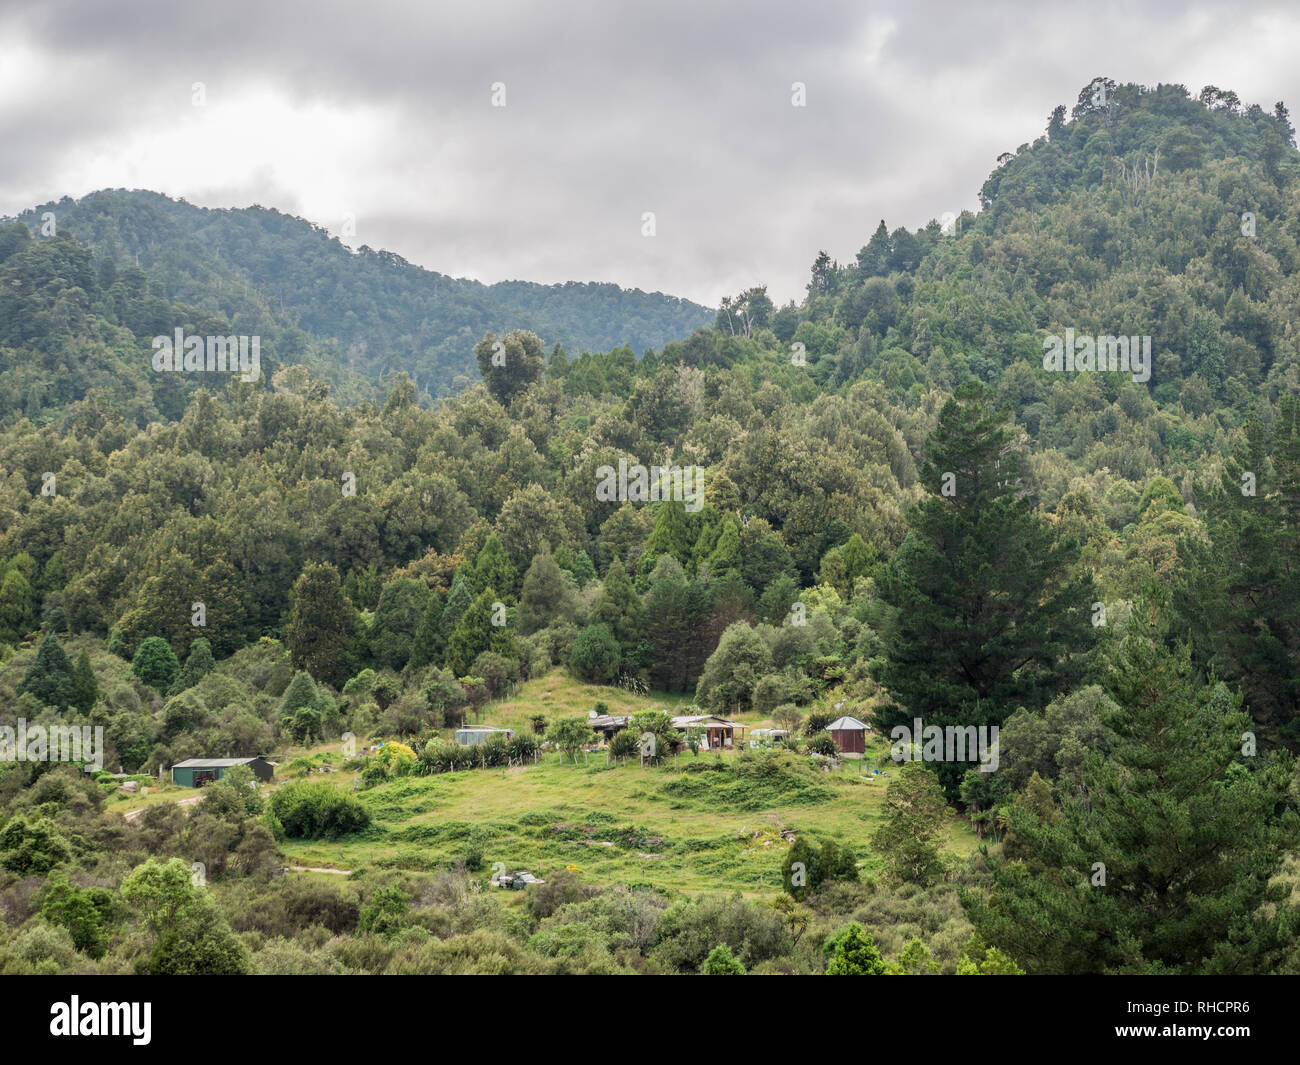 Villaggio Maori nella radura, Te Wai-iti, Te Urewera, Isola del nord, Nuova Zelanda. Foto Stock